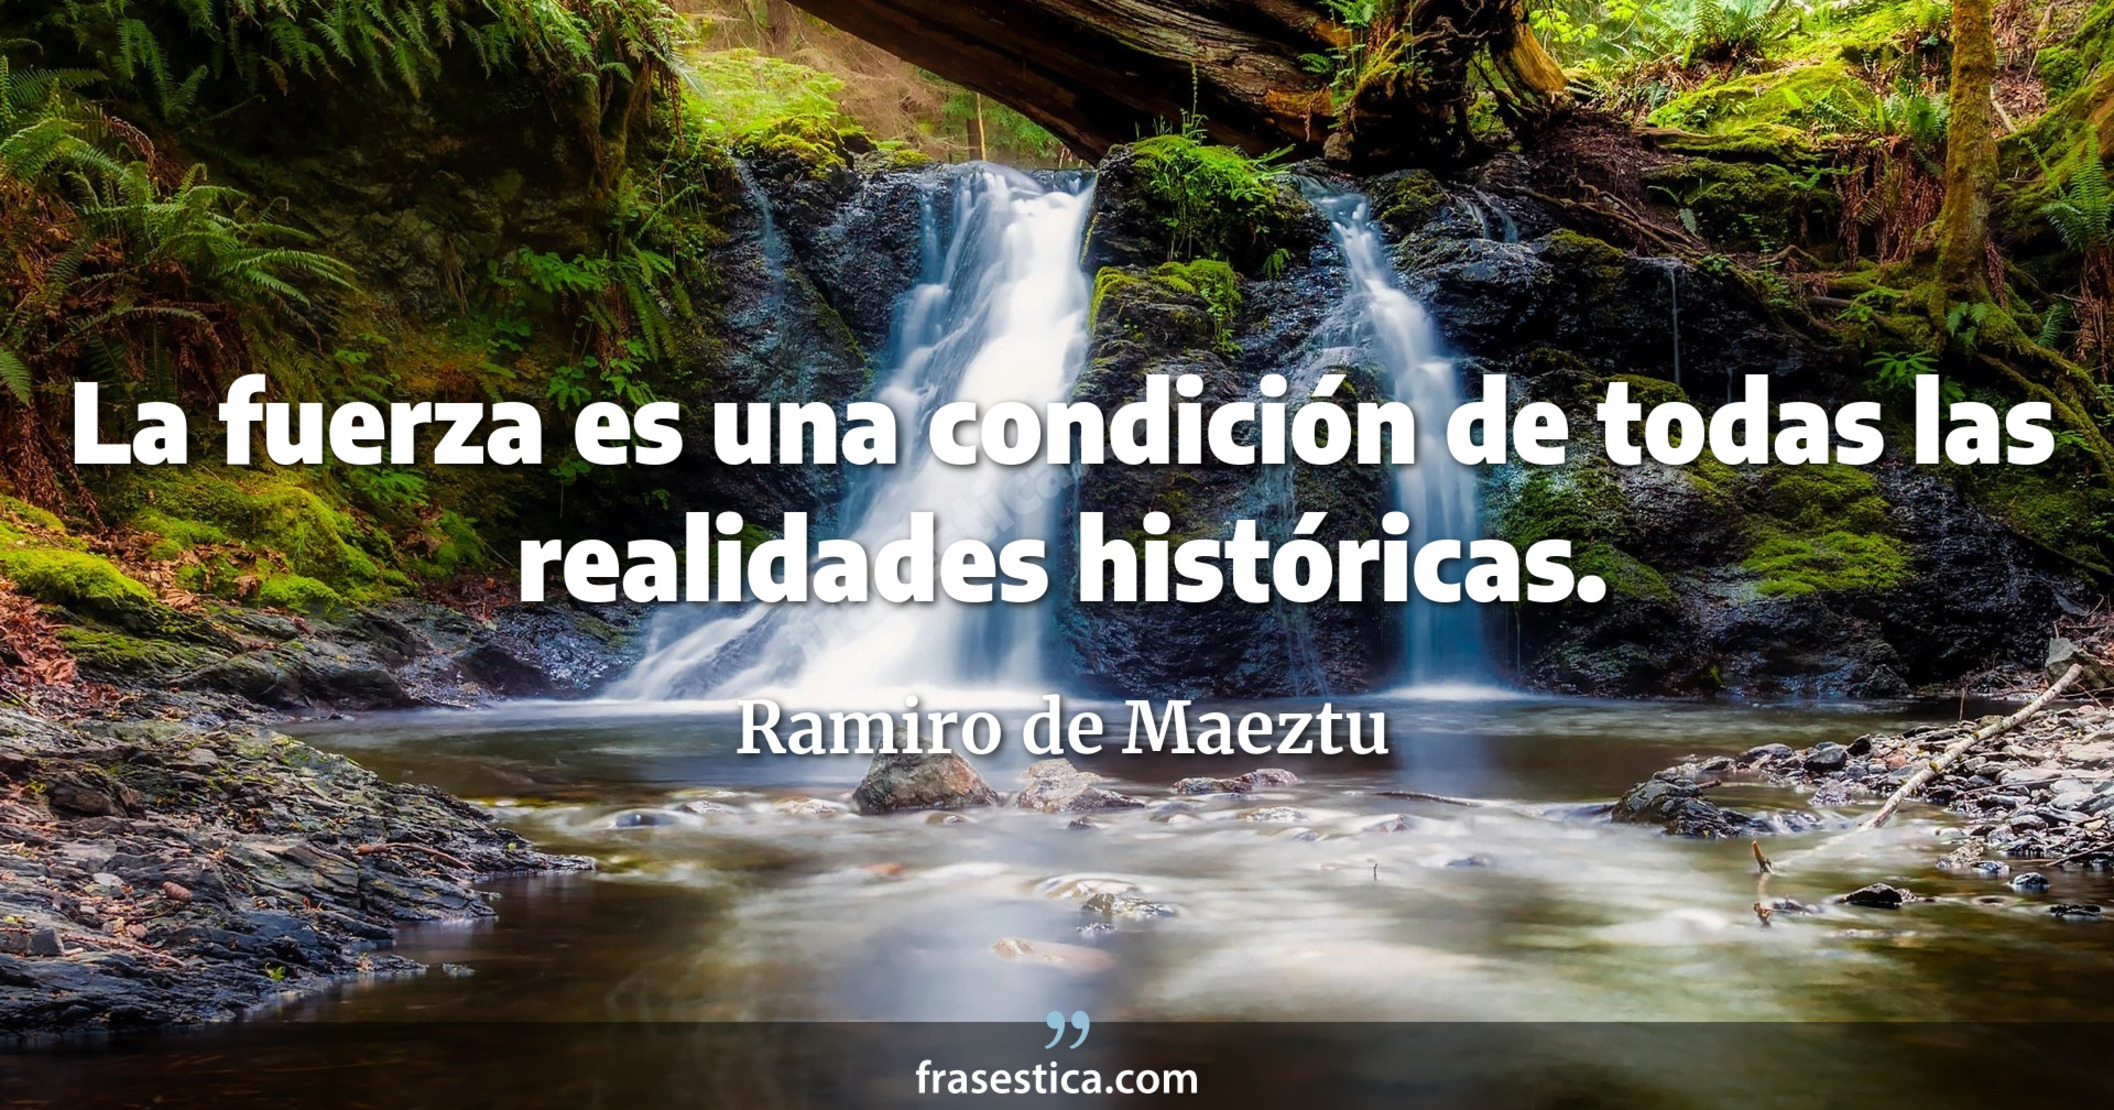 La fuerza es una condición de todas las realidades históricas. - Ramiro de Maeztu